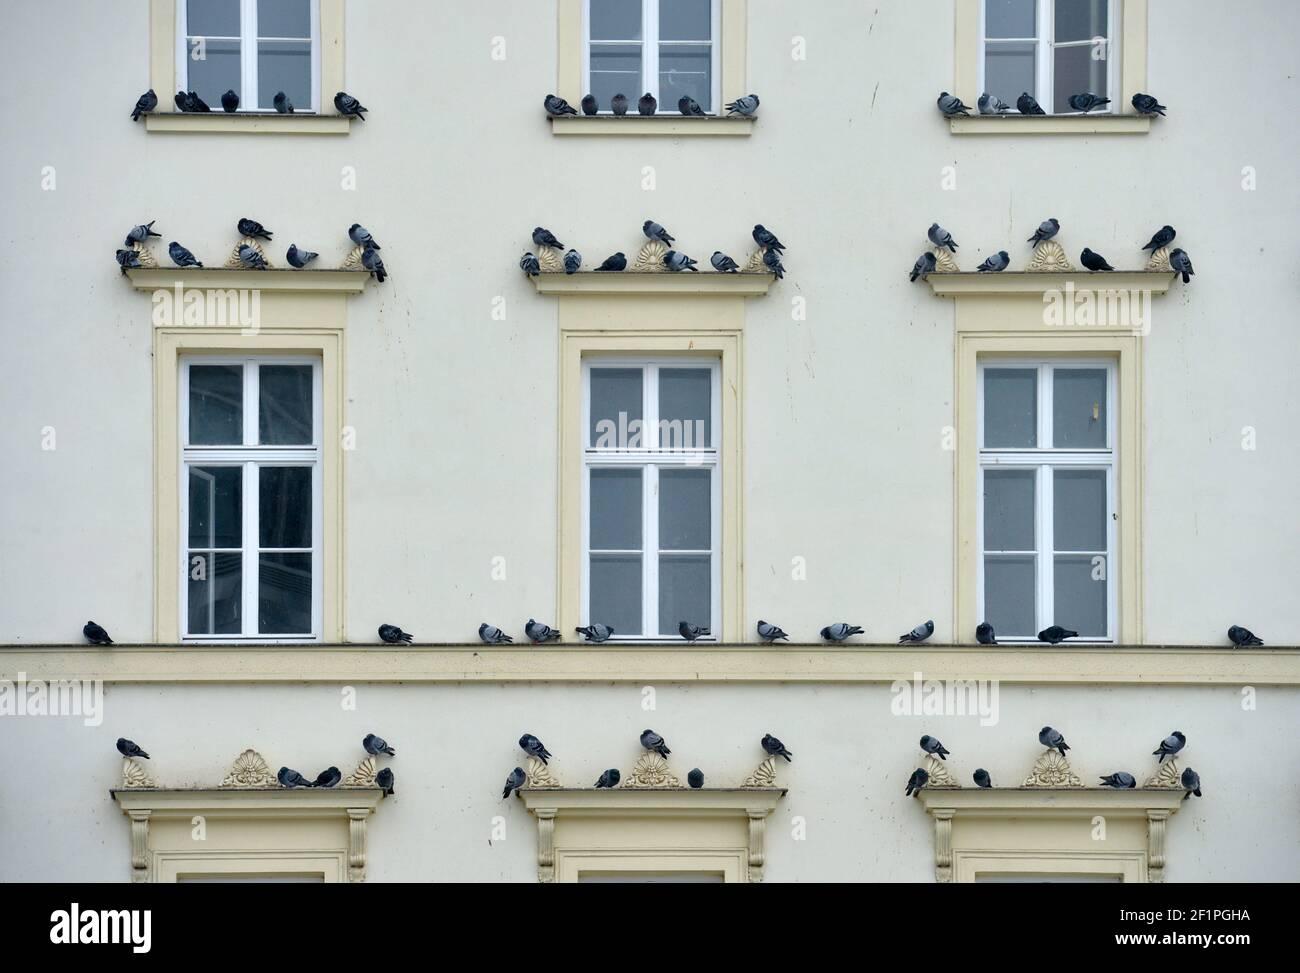 Leipzig, Alemania. 06th de febrero de 2021. Las palomas de la ciudad se sientan en las ventanas de un edificio histórico en el Brühl en Leipzig. Crédito: Volkmar Heinz/dpa-Zentralbild/ZB/dpa/Alamy Live News Foto de stock